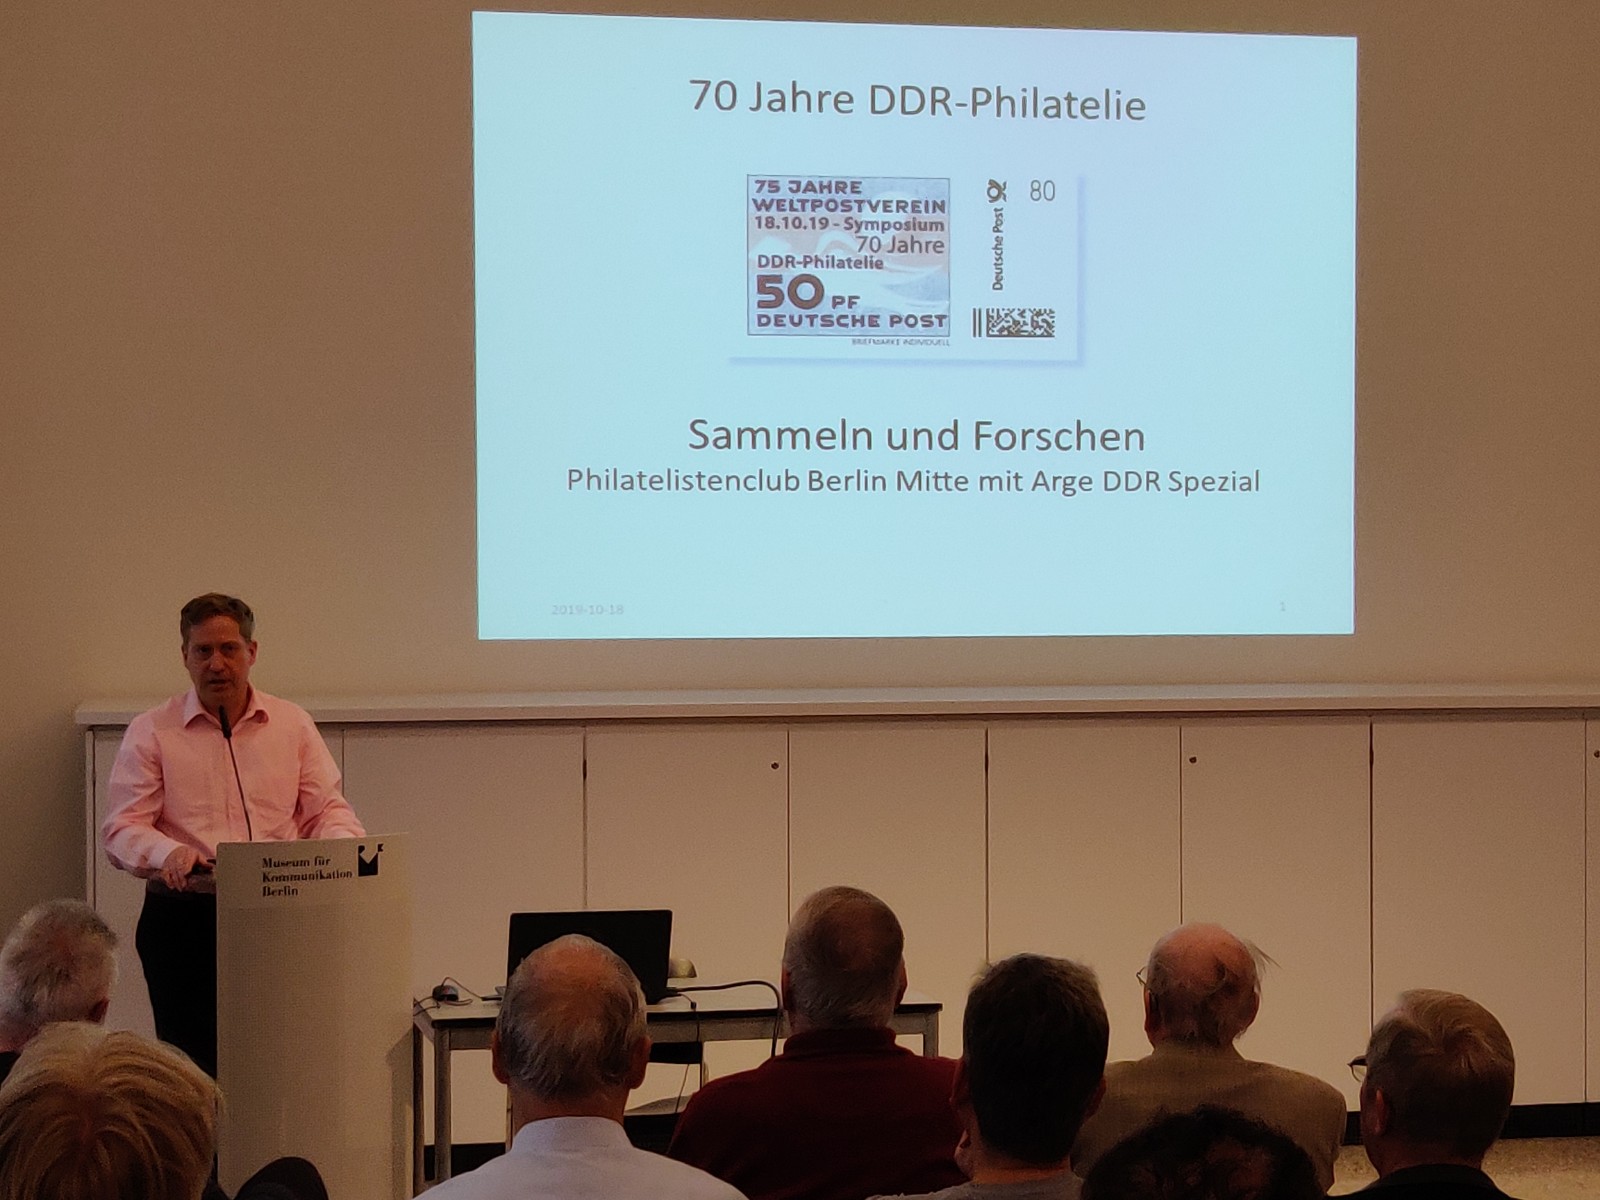 DDR Philatelie Symposium 70 Jahre